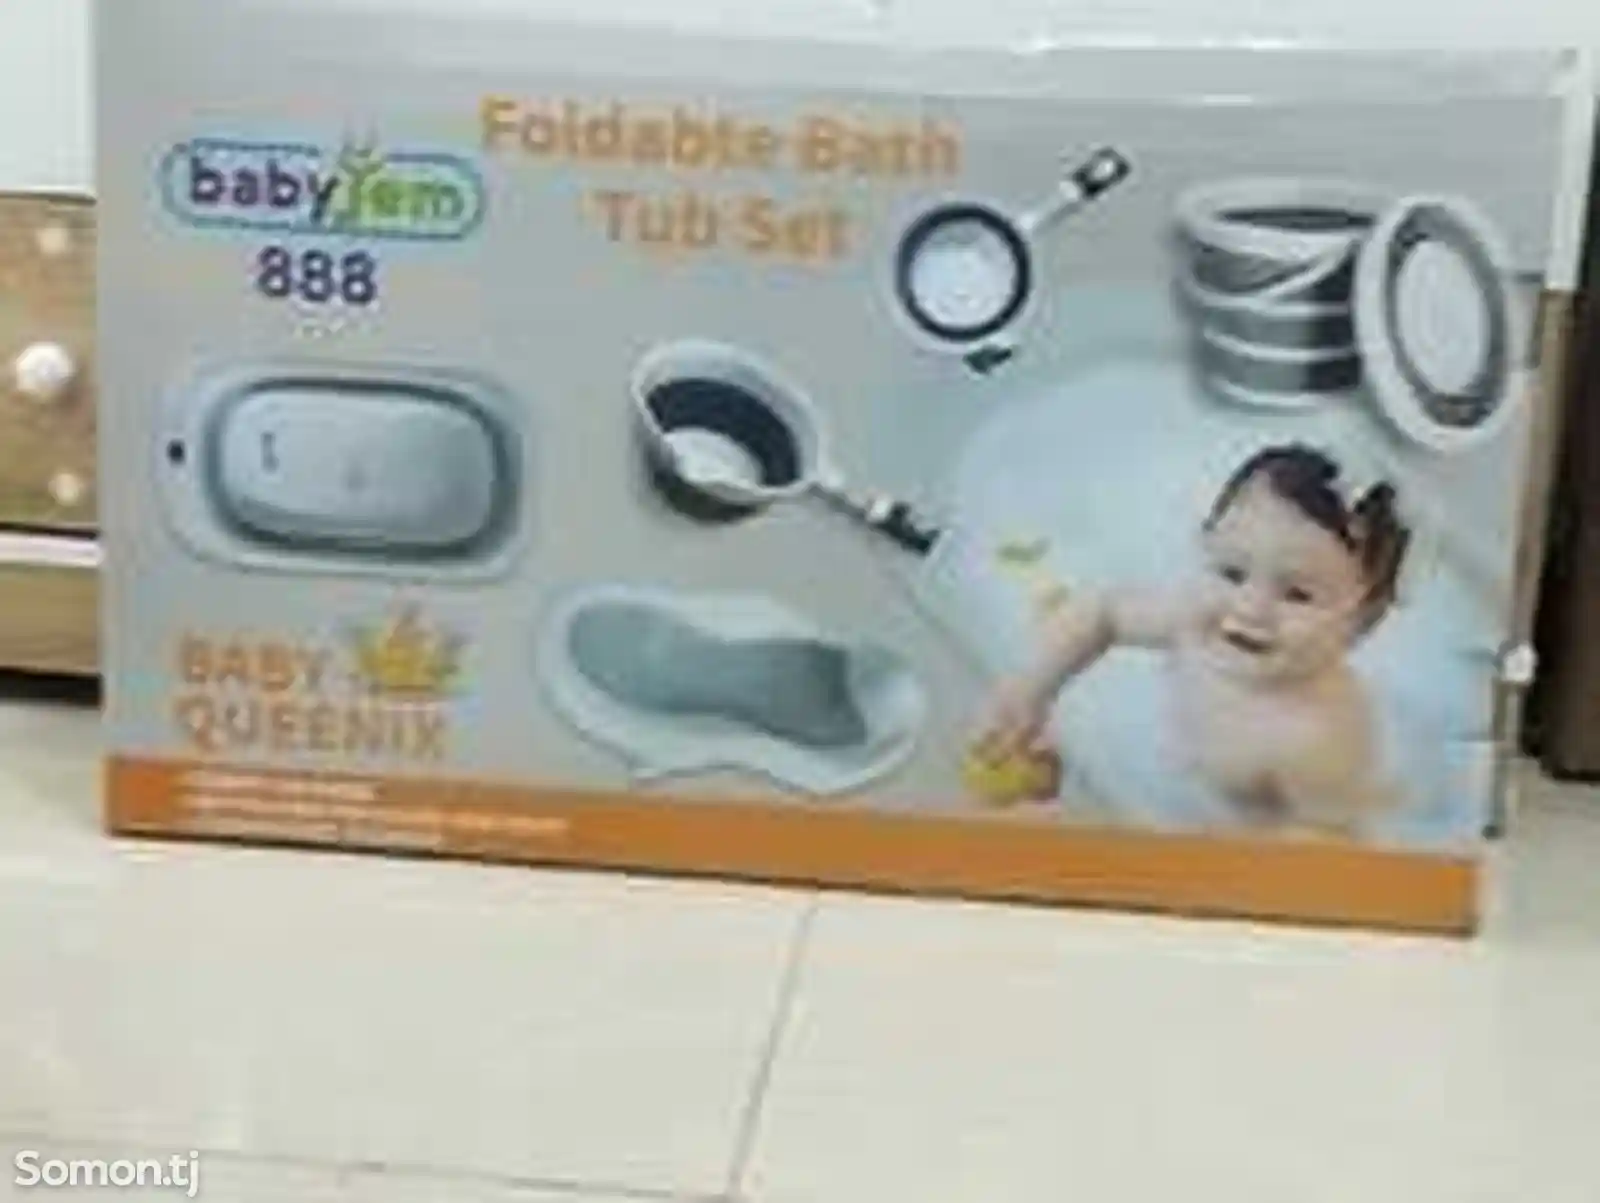 Комплект для детского купания Gudbebie-2